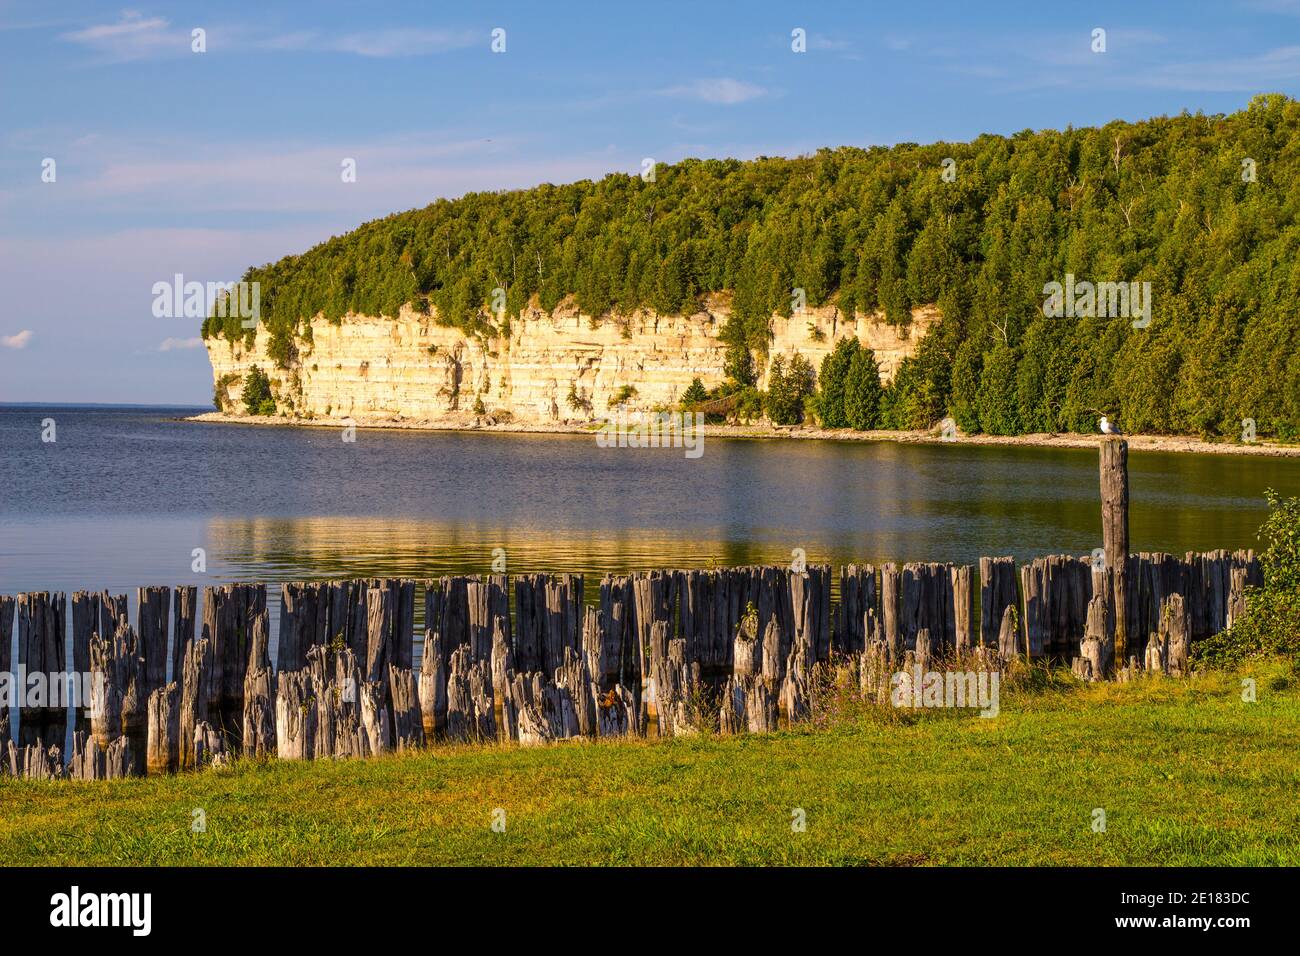 Michigan state Parks. Splendida vista sul vecchio porto e sulle scogliere calcaree lungo la costa del lago Michigan nel Fayette state Historical Park. Foto Stock